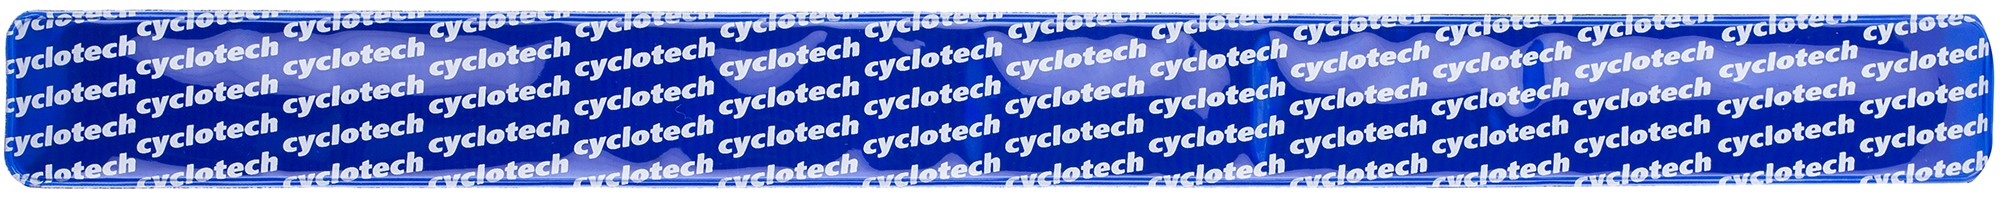 Браслет светоотражающий Cyclotech